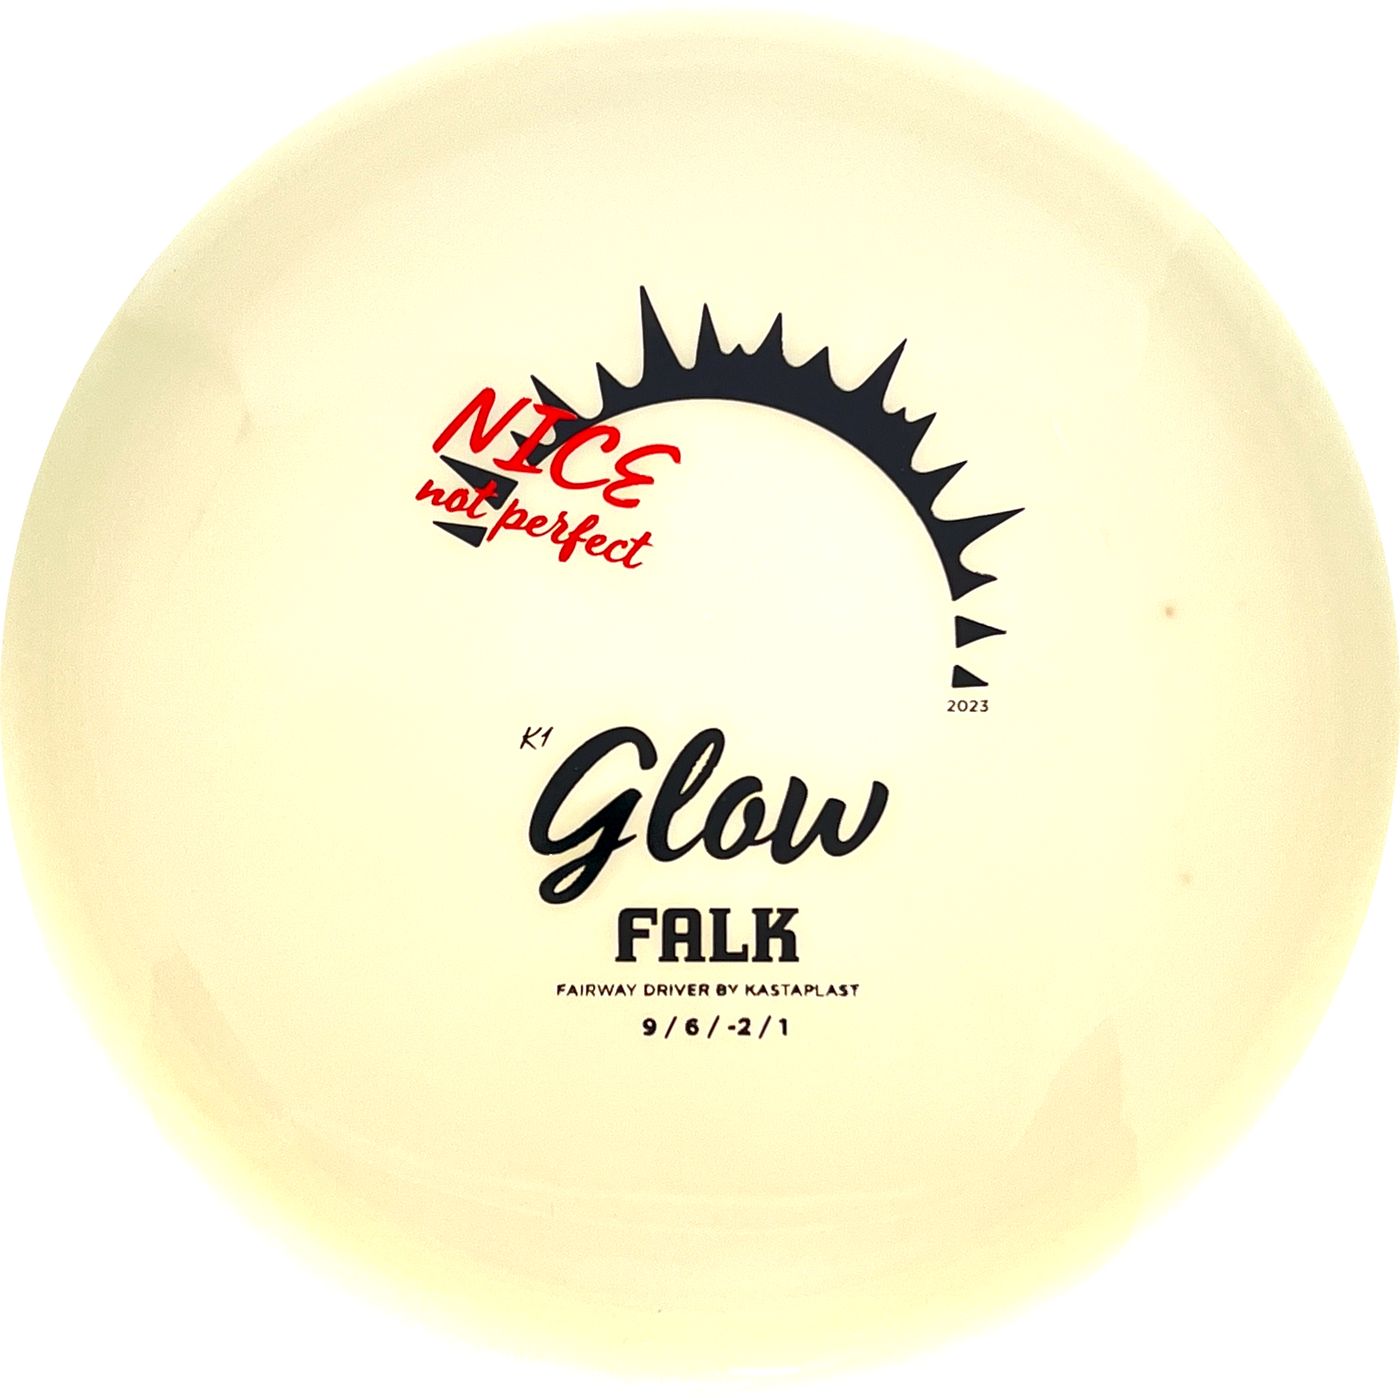 K1 Glow Falk X-Out